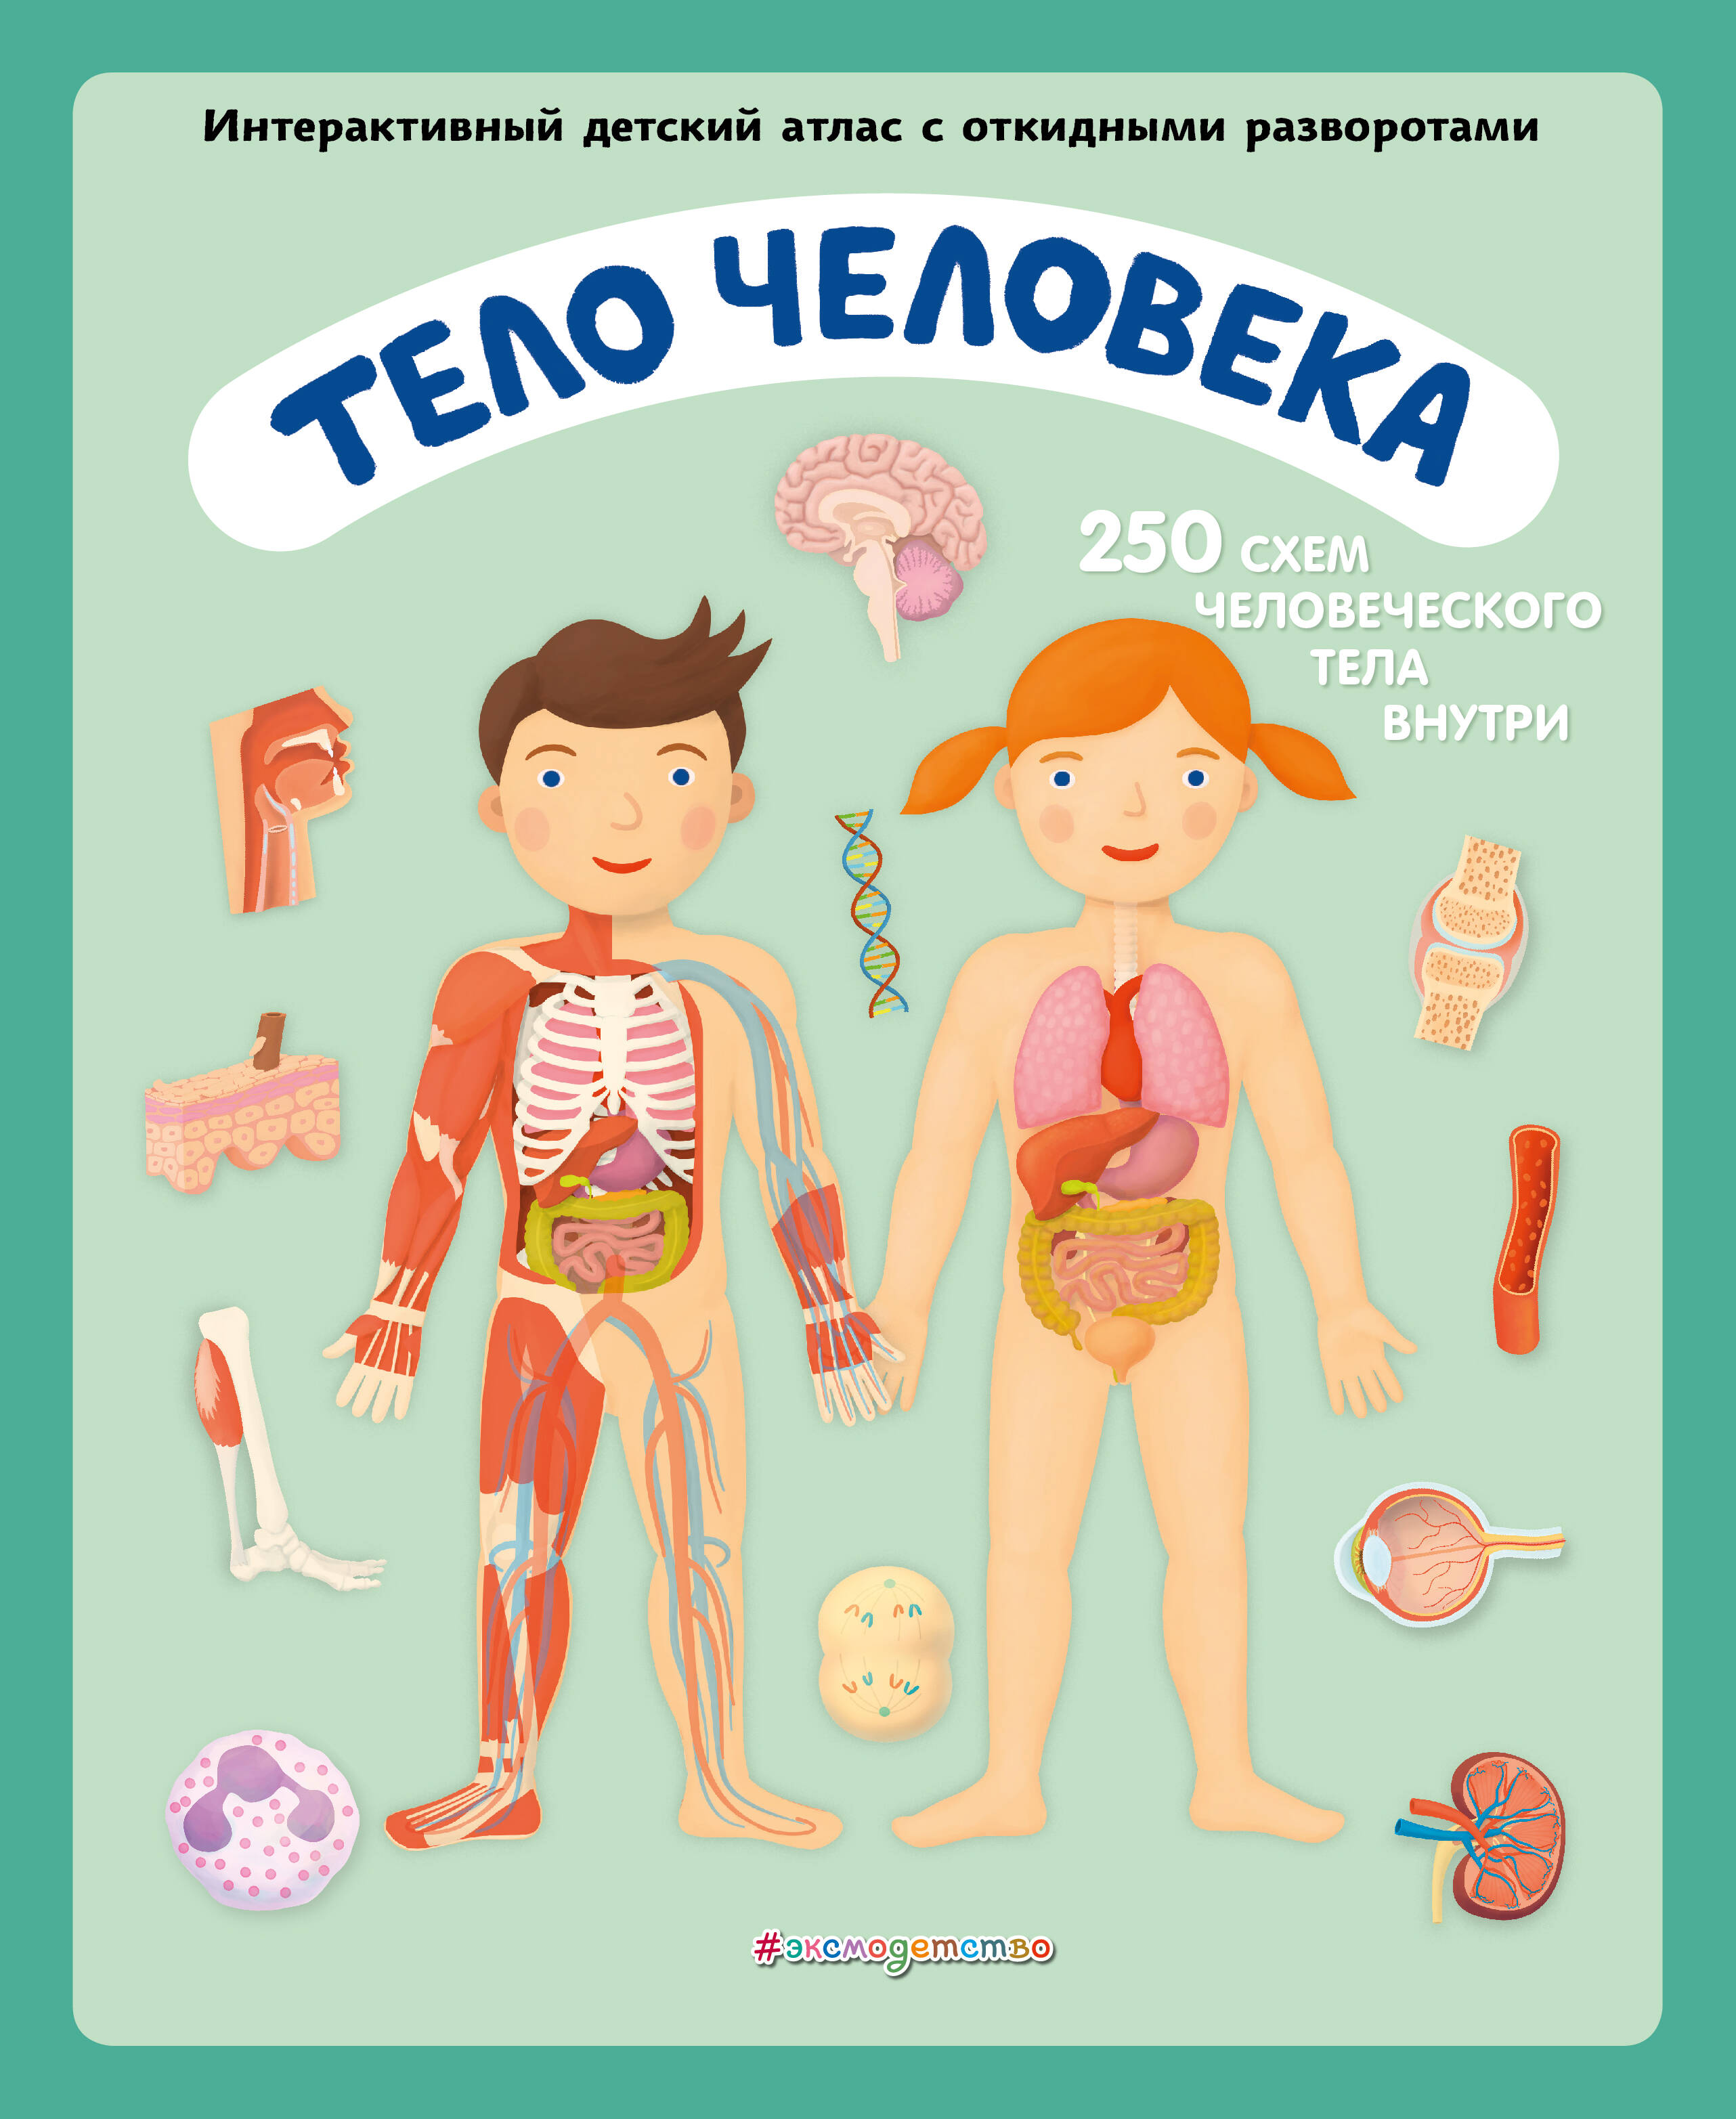 Ружичка Олдрих Тело человека. Интерактивный детский атлас с откидными разворотами цена и фото